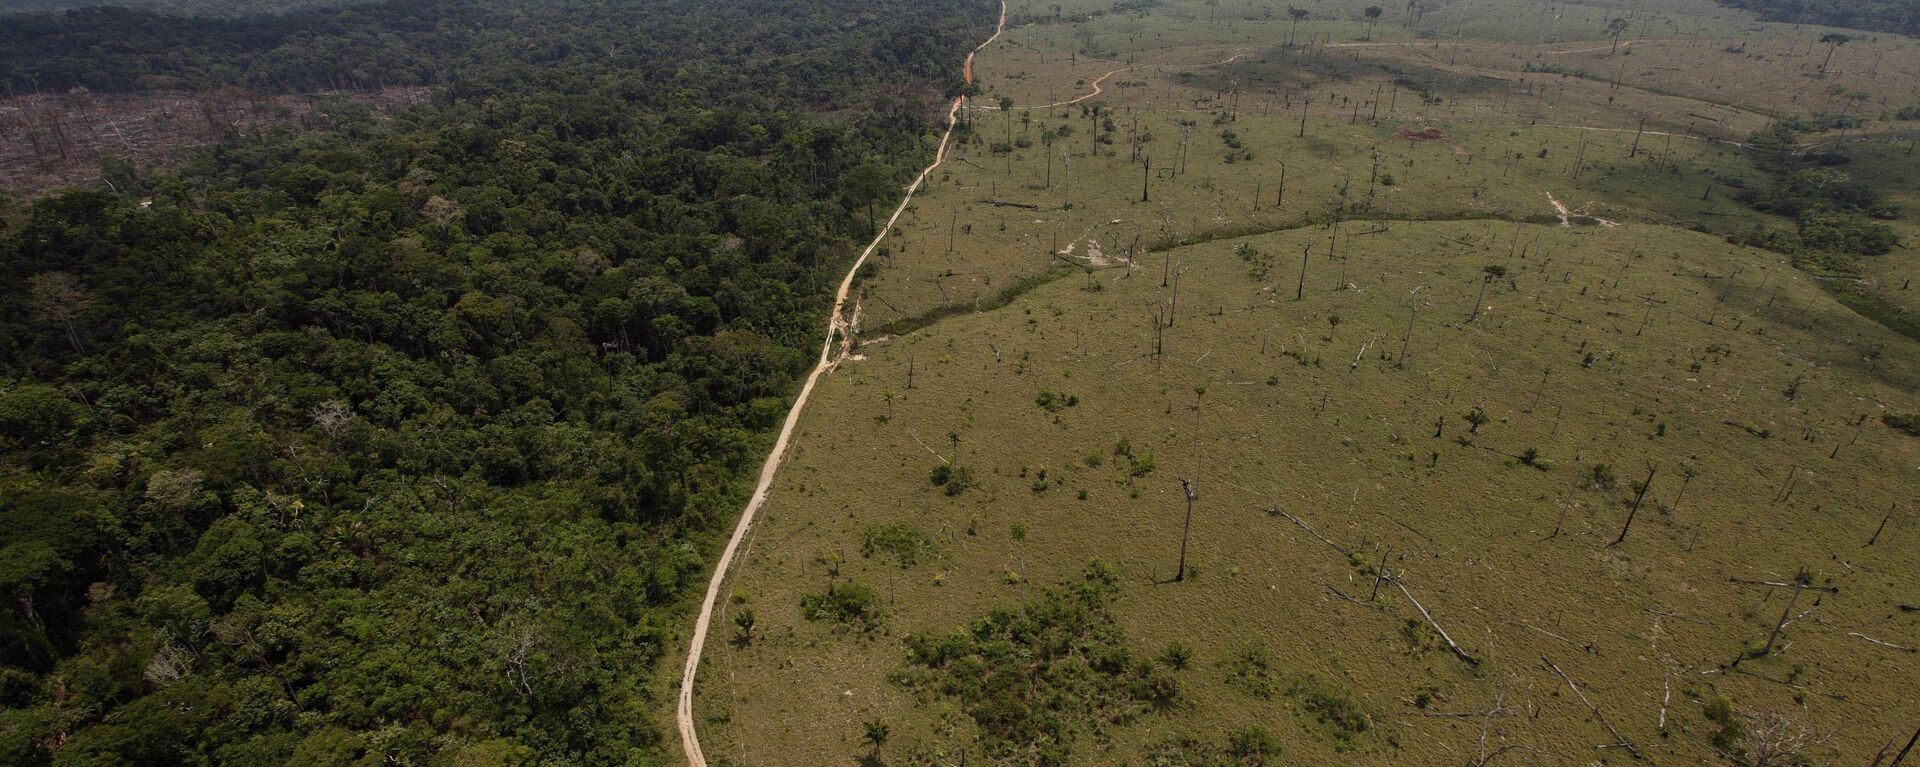 Una área deforestada en la Amazonía brasileña - Sputnik Mundo, 1920, 06.09.2021